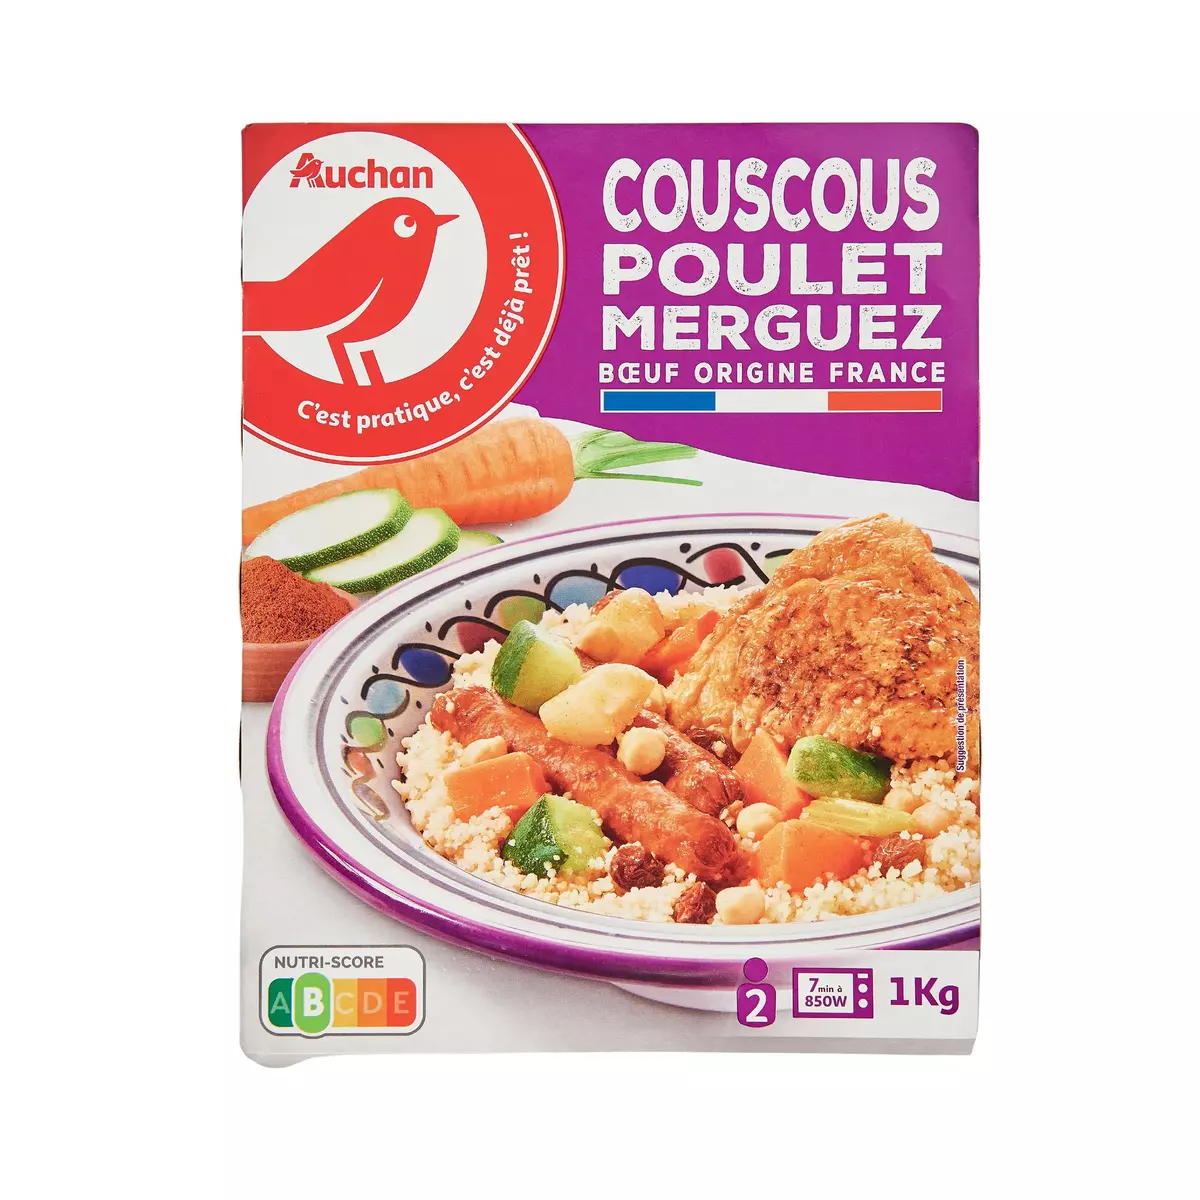 AUCHAN Couscous poulet et merguez 2 portions 1kg